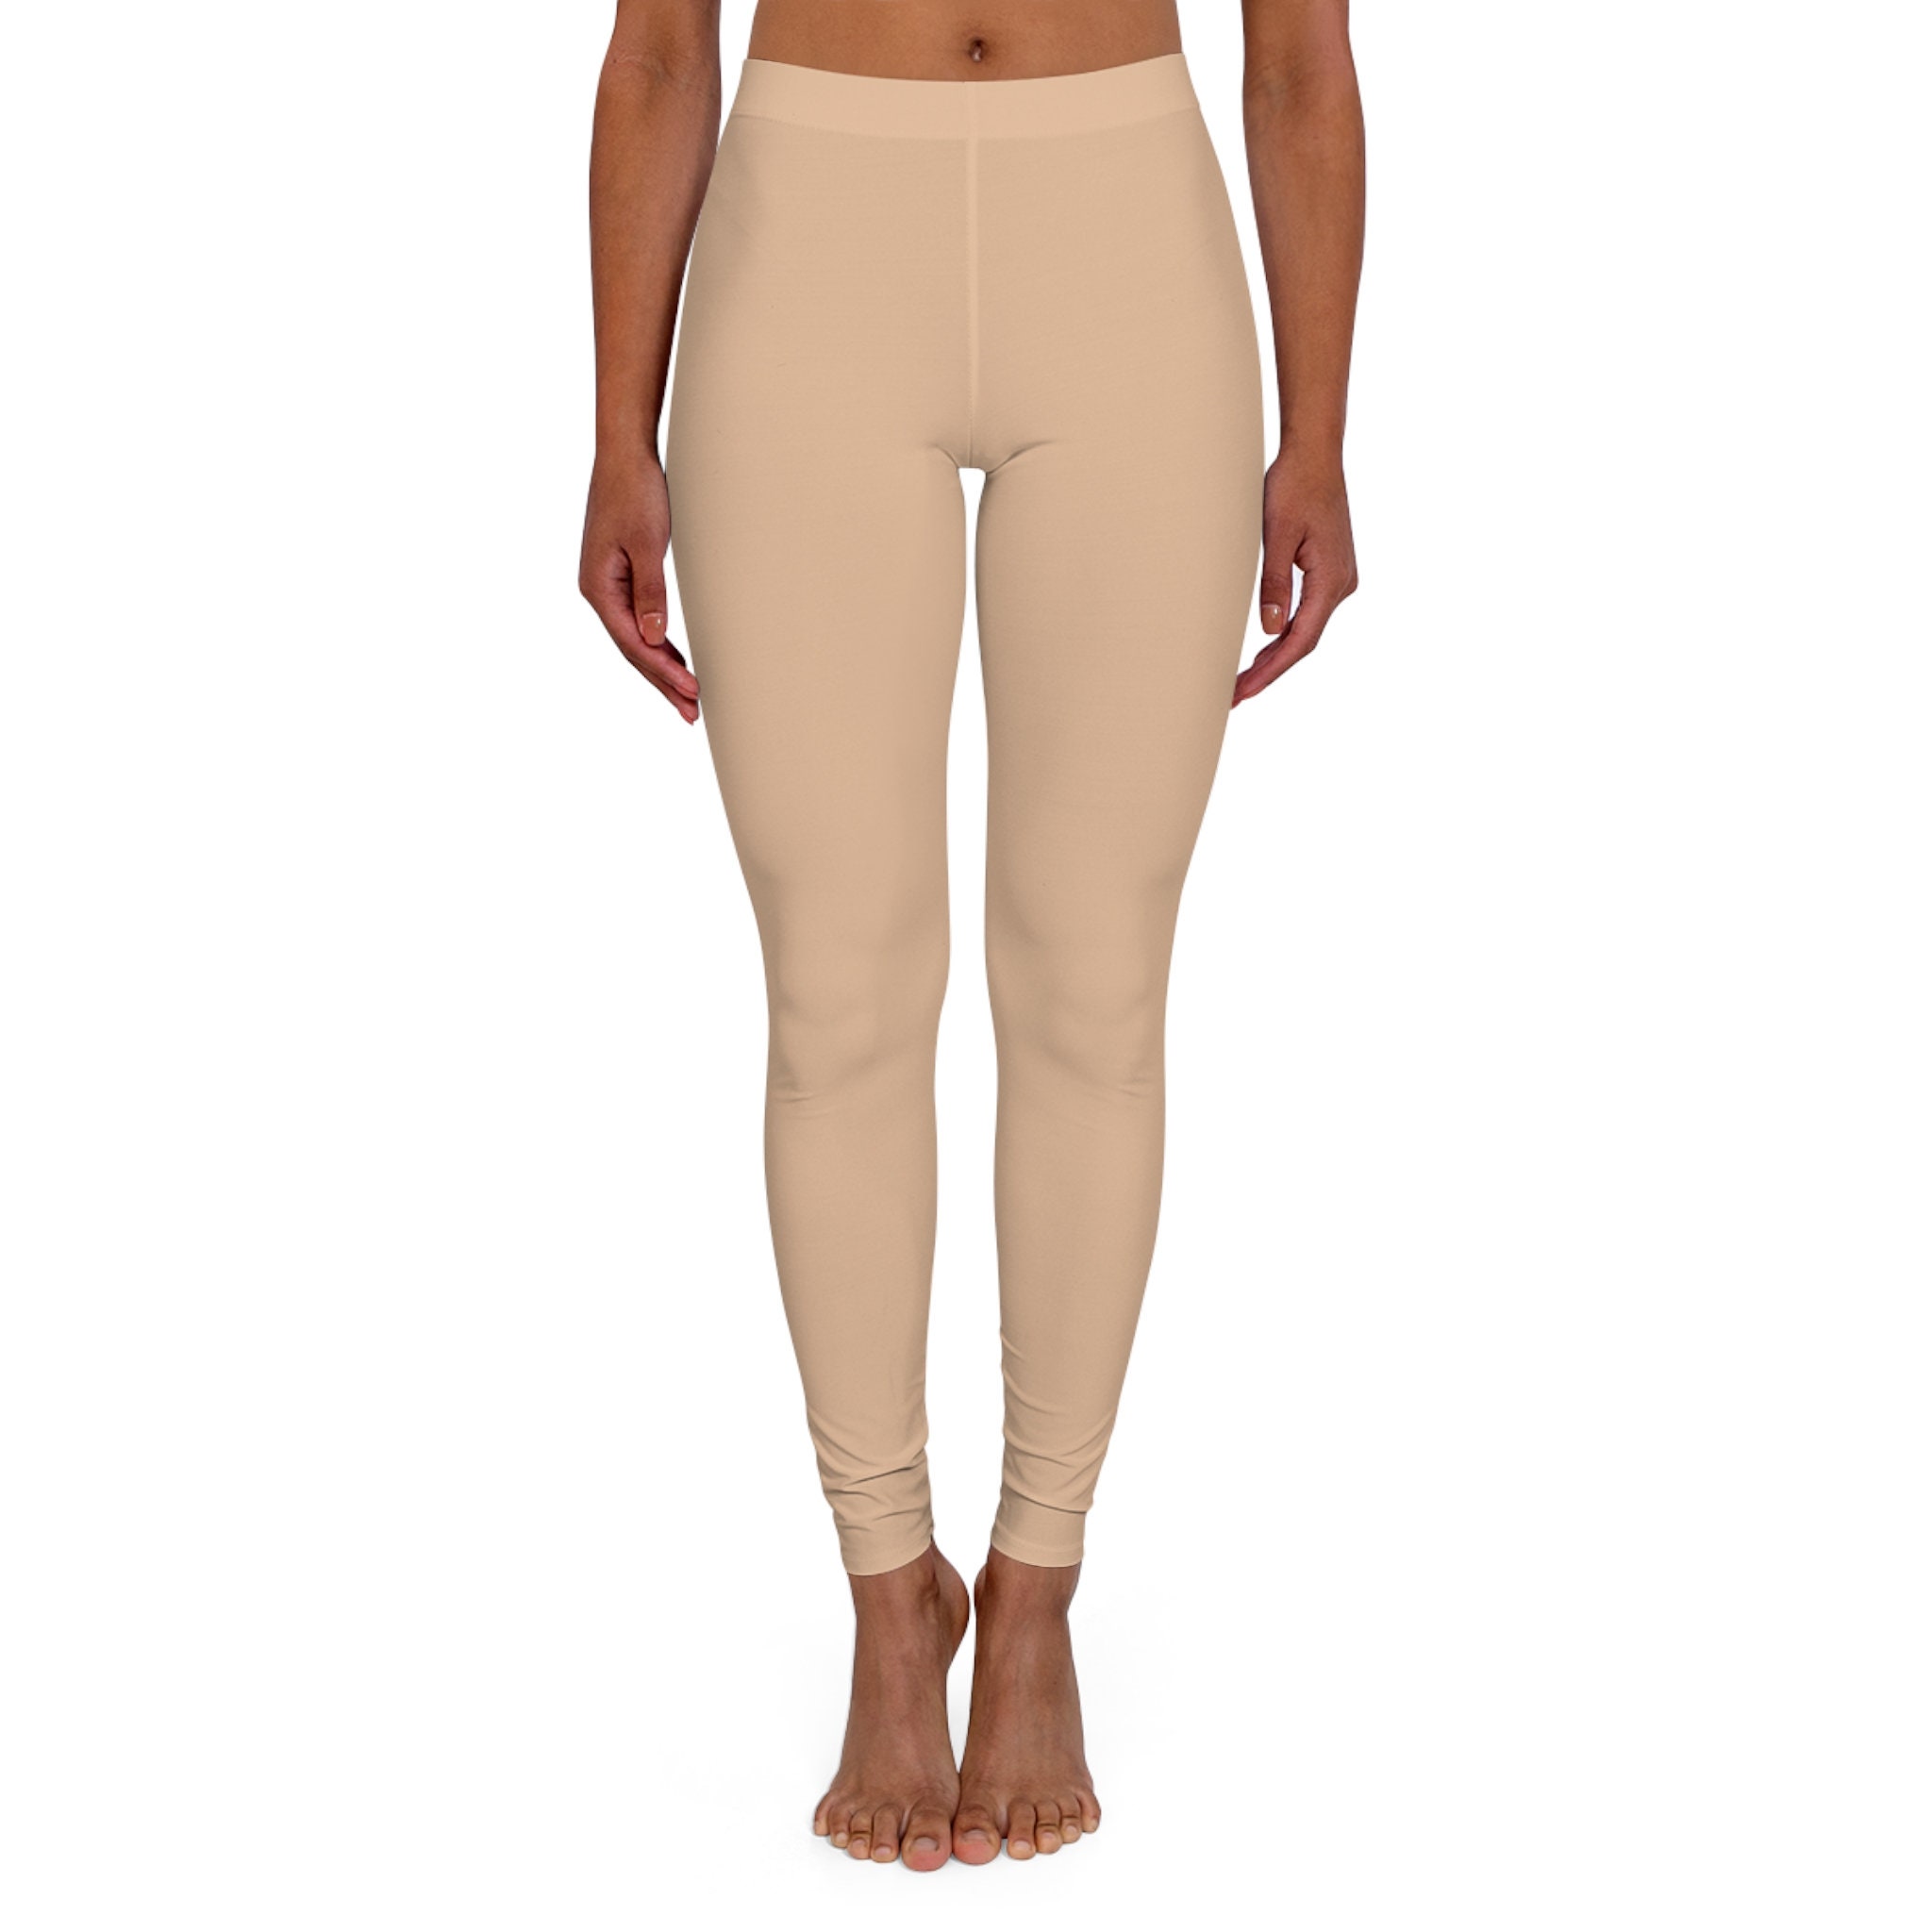 Share 223+ cream colored capri leggings best